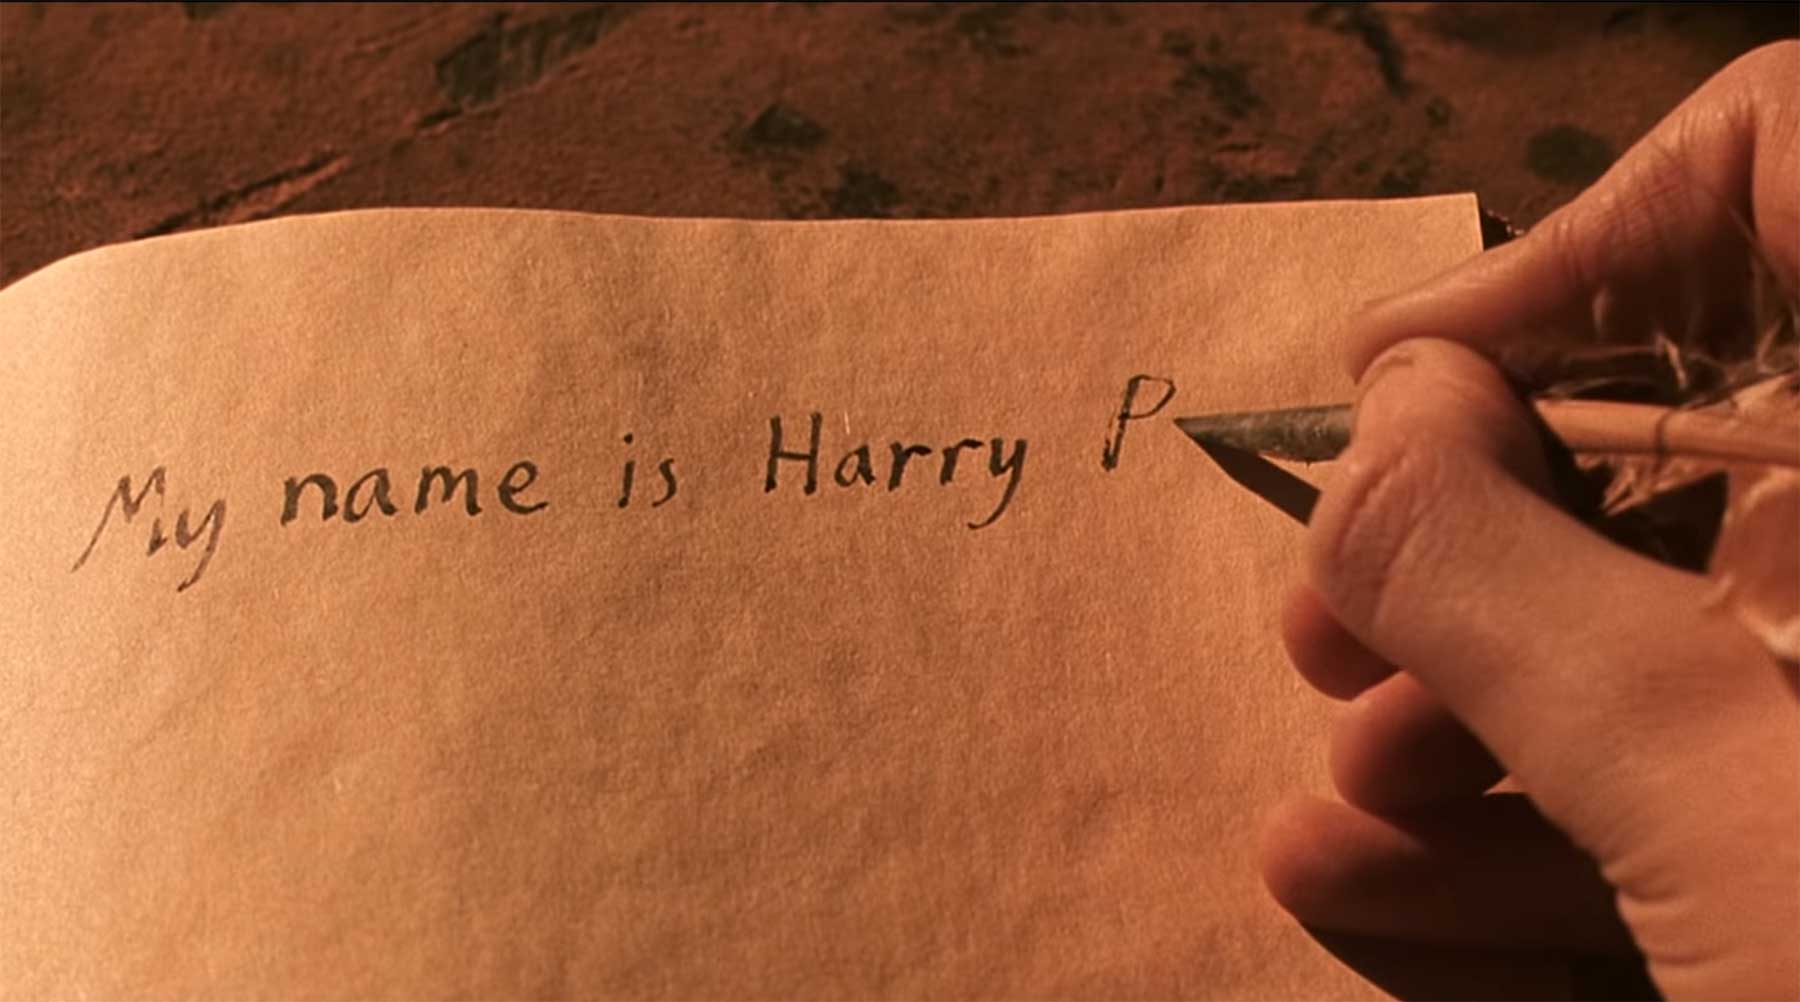 Harry Potter und die unbeabsichtigten ASMR-Momente